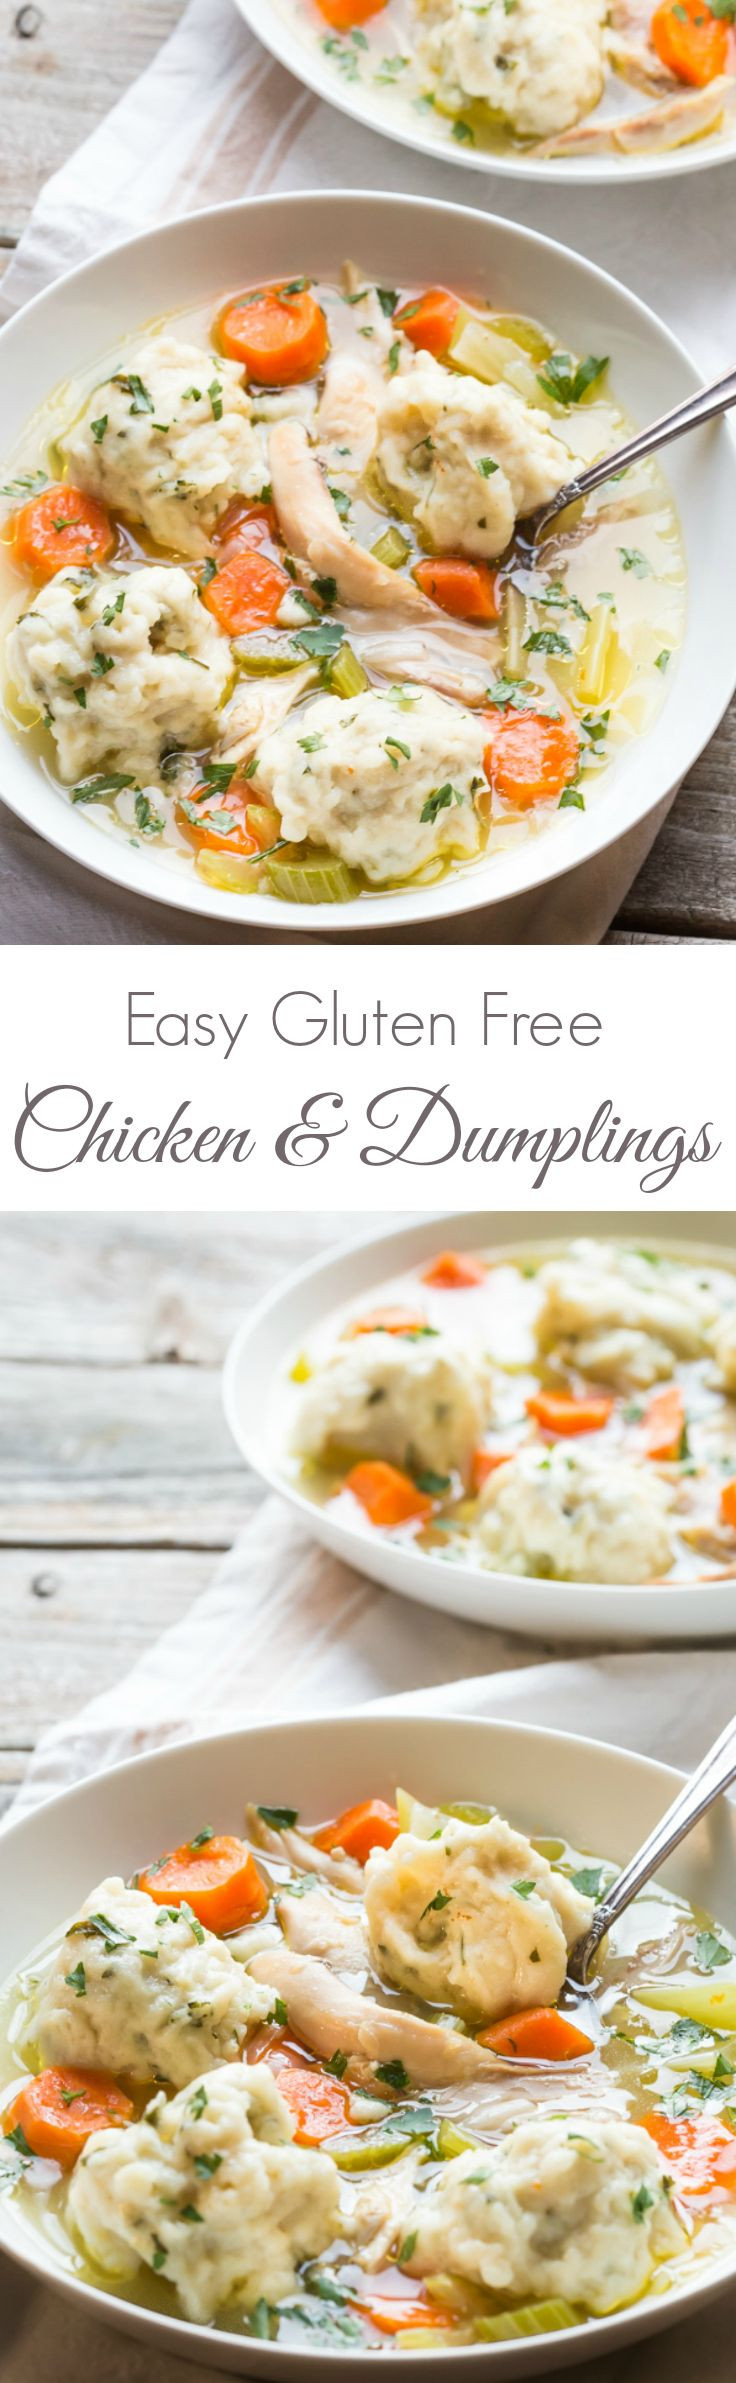 Gluten Free Dumplings Frozen
 Best 25 Gluten free ideas on Pinterest